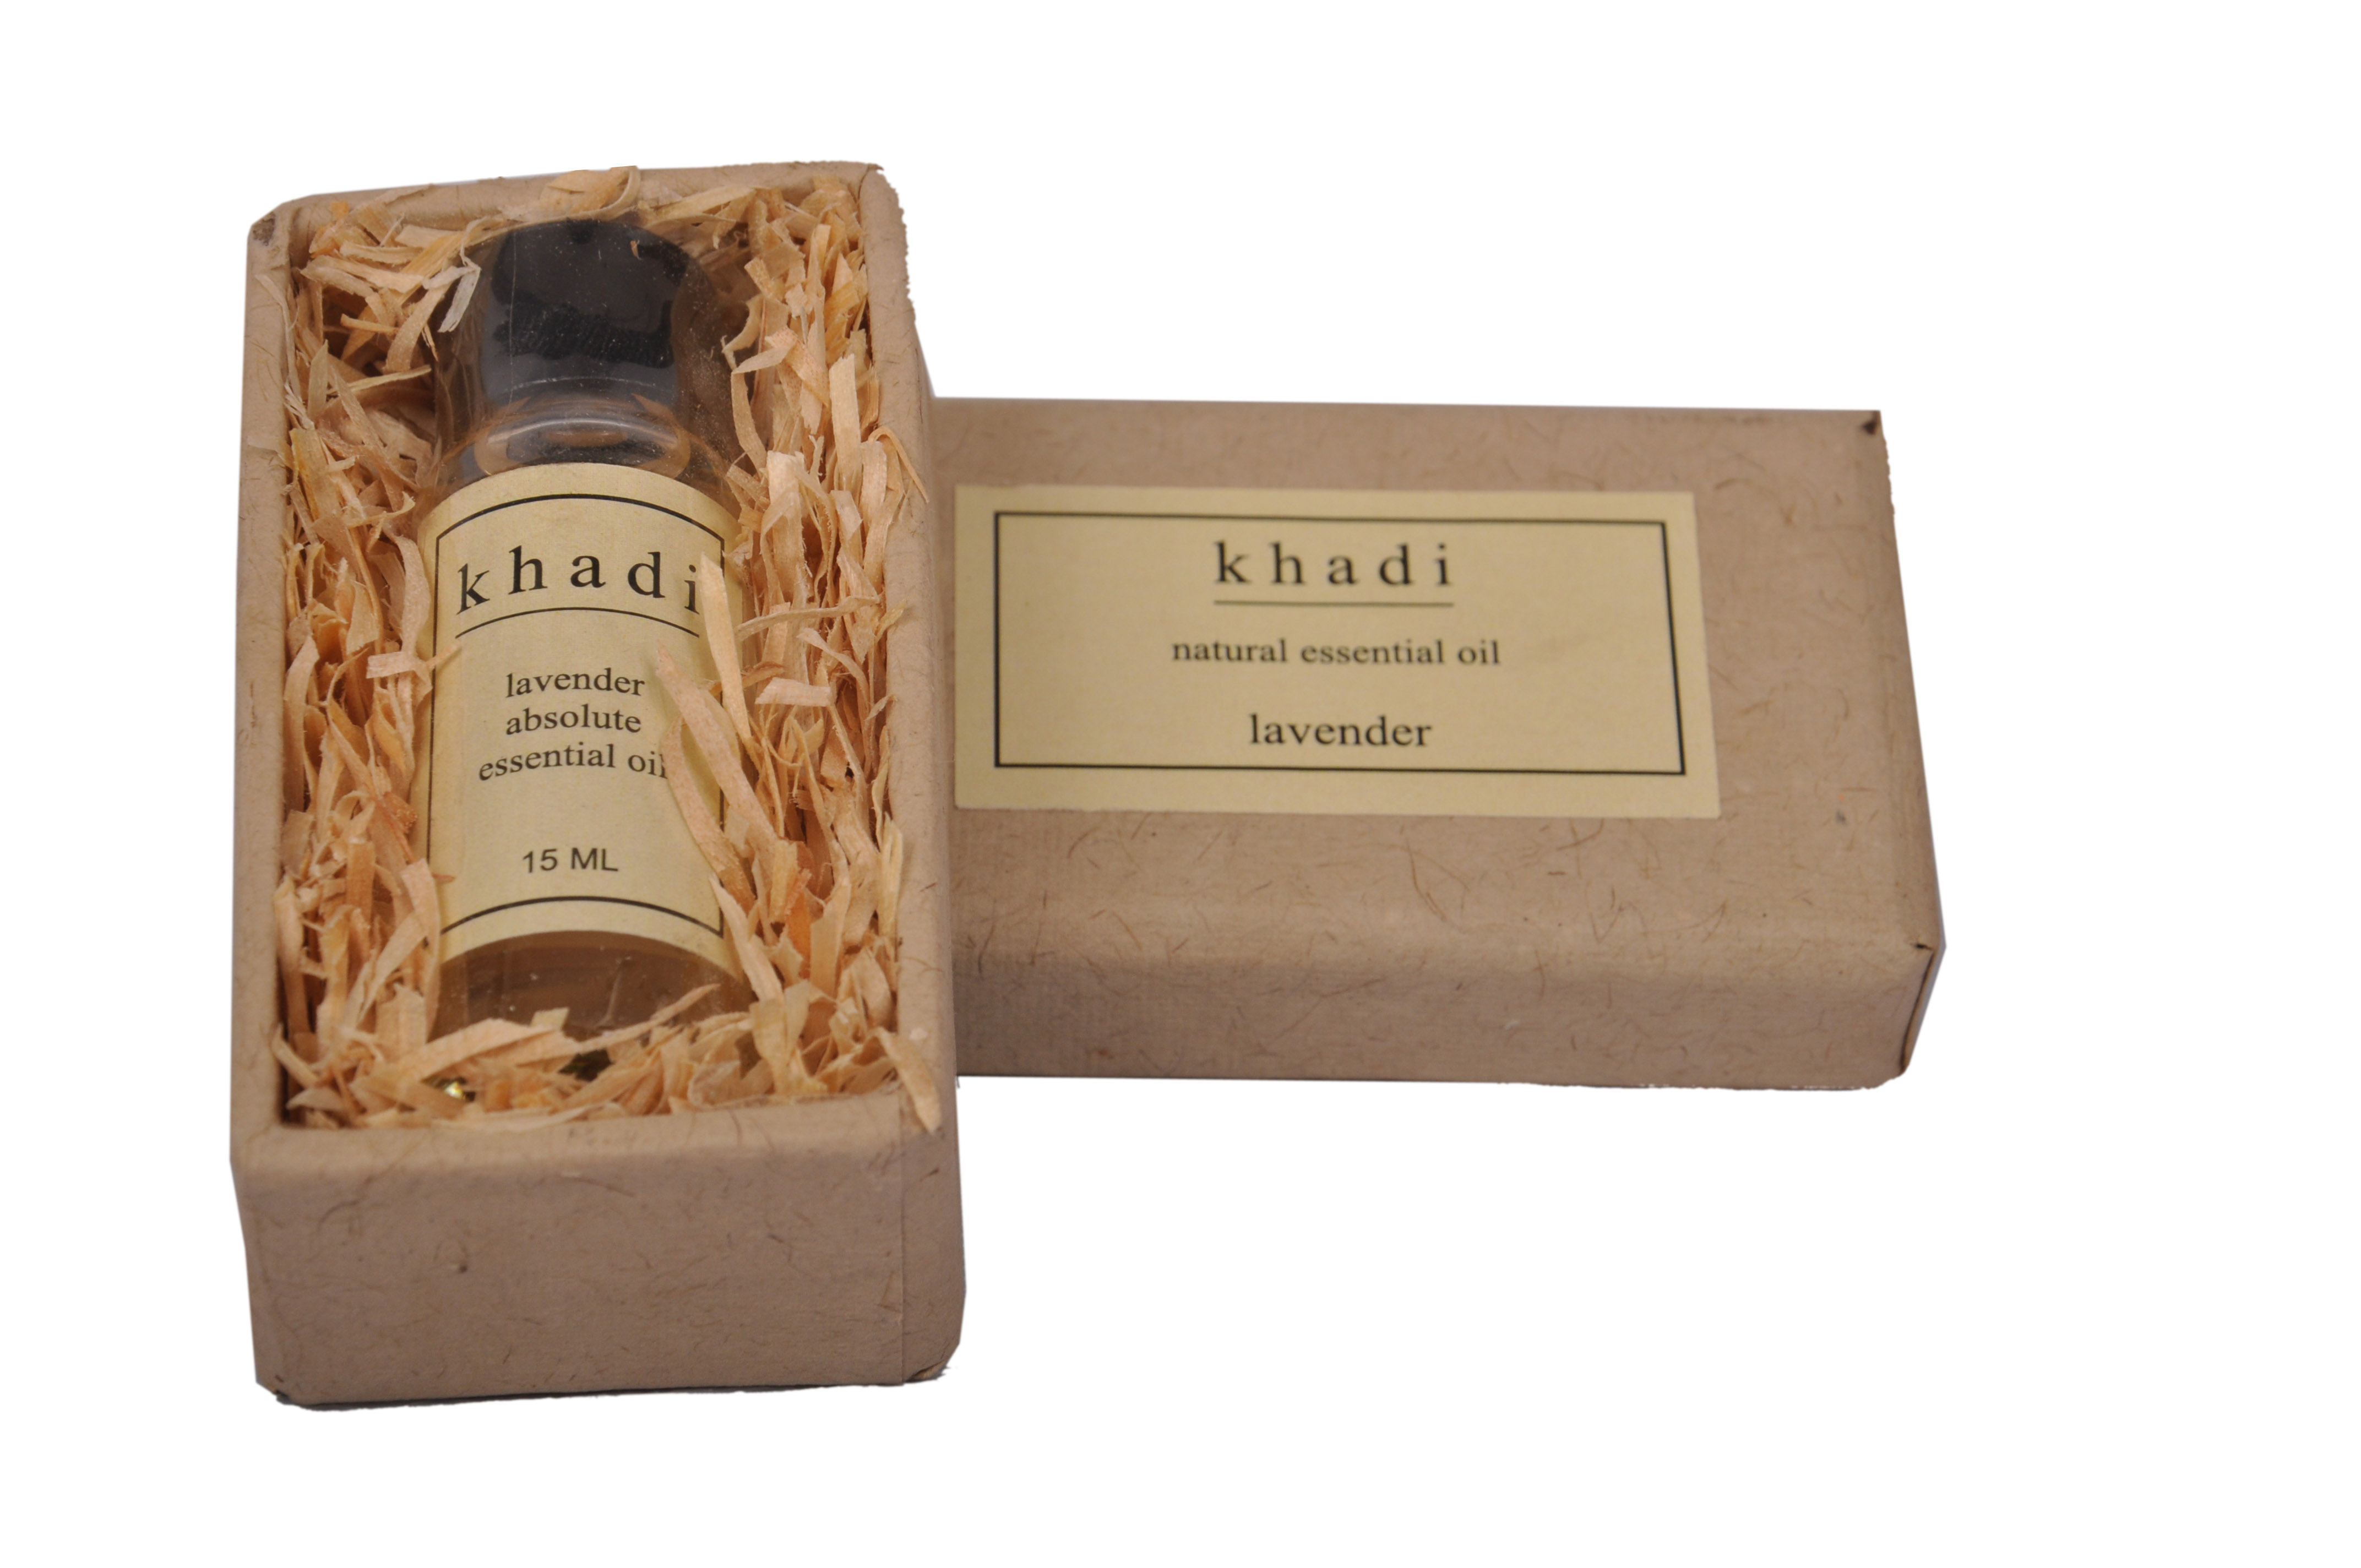 Buy Khadi Lavender Essential Oil at Best Price Online